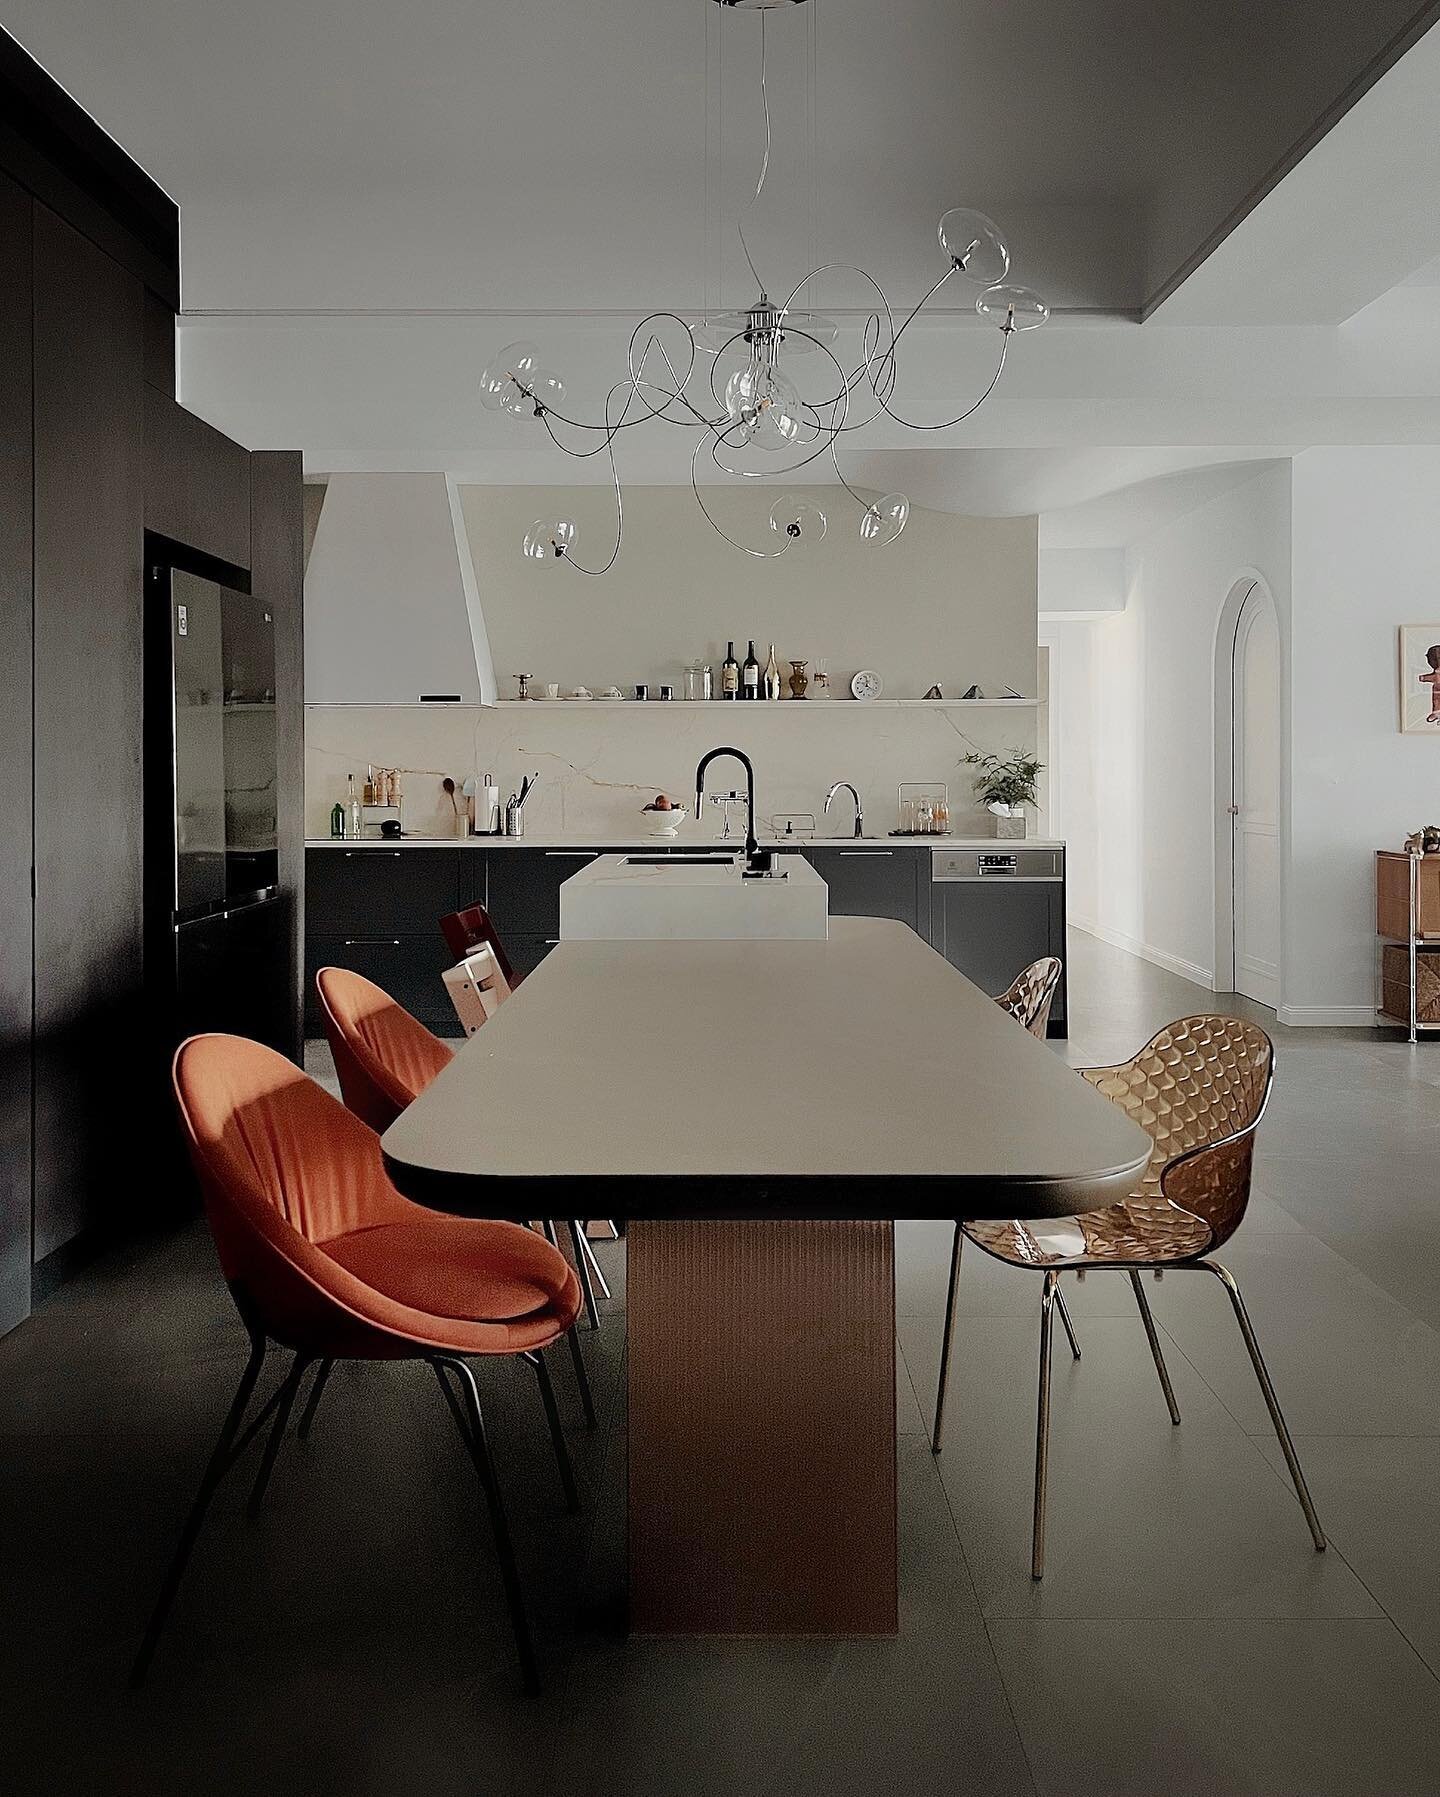 雋永的顏色，清透的材質，點點螢光照亮黑色餐廚空間。

⋯⋯
#haodesign #haoslifetw #interiordesign #interiorstyling #interiordecor #decor #kitchen #diningroom #calligaris #cattelanitalia #postitfortheaesthetic #tflers